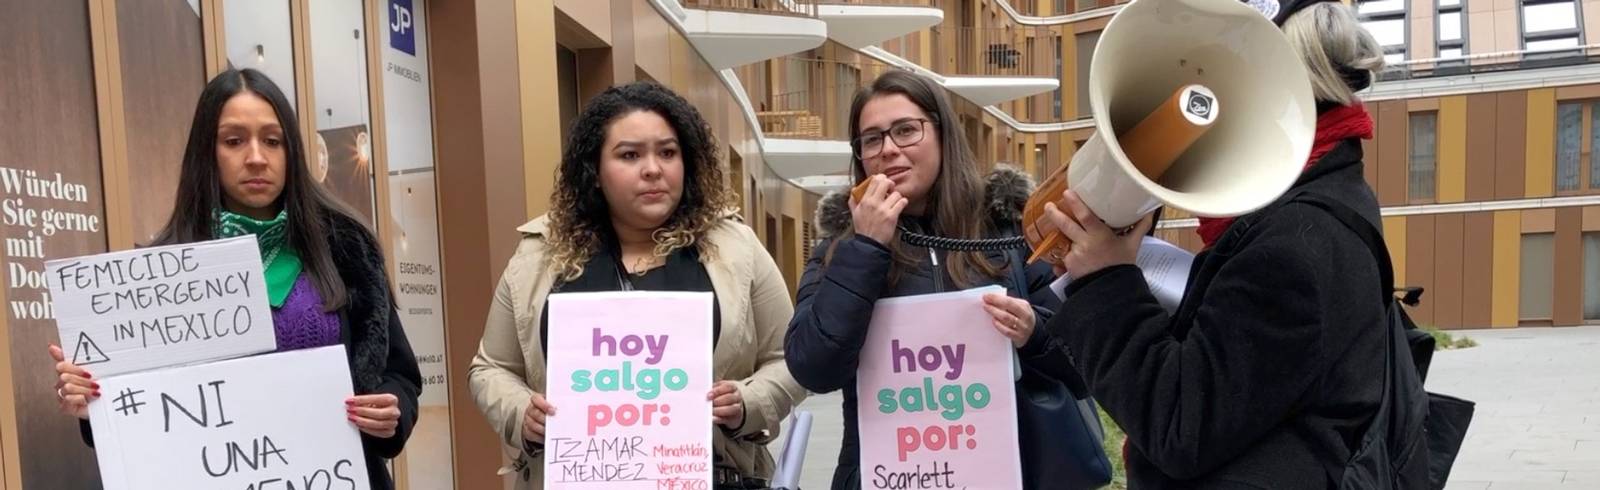 Frauenmorde: Solidarität mit Mexiko